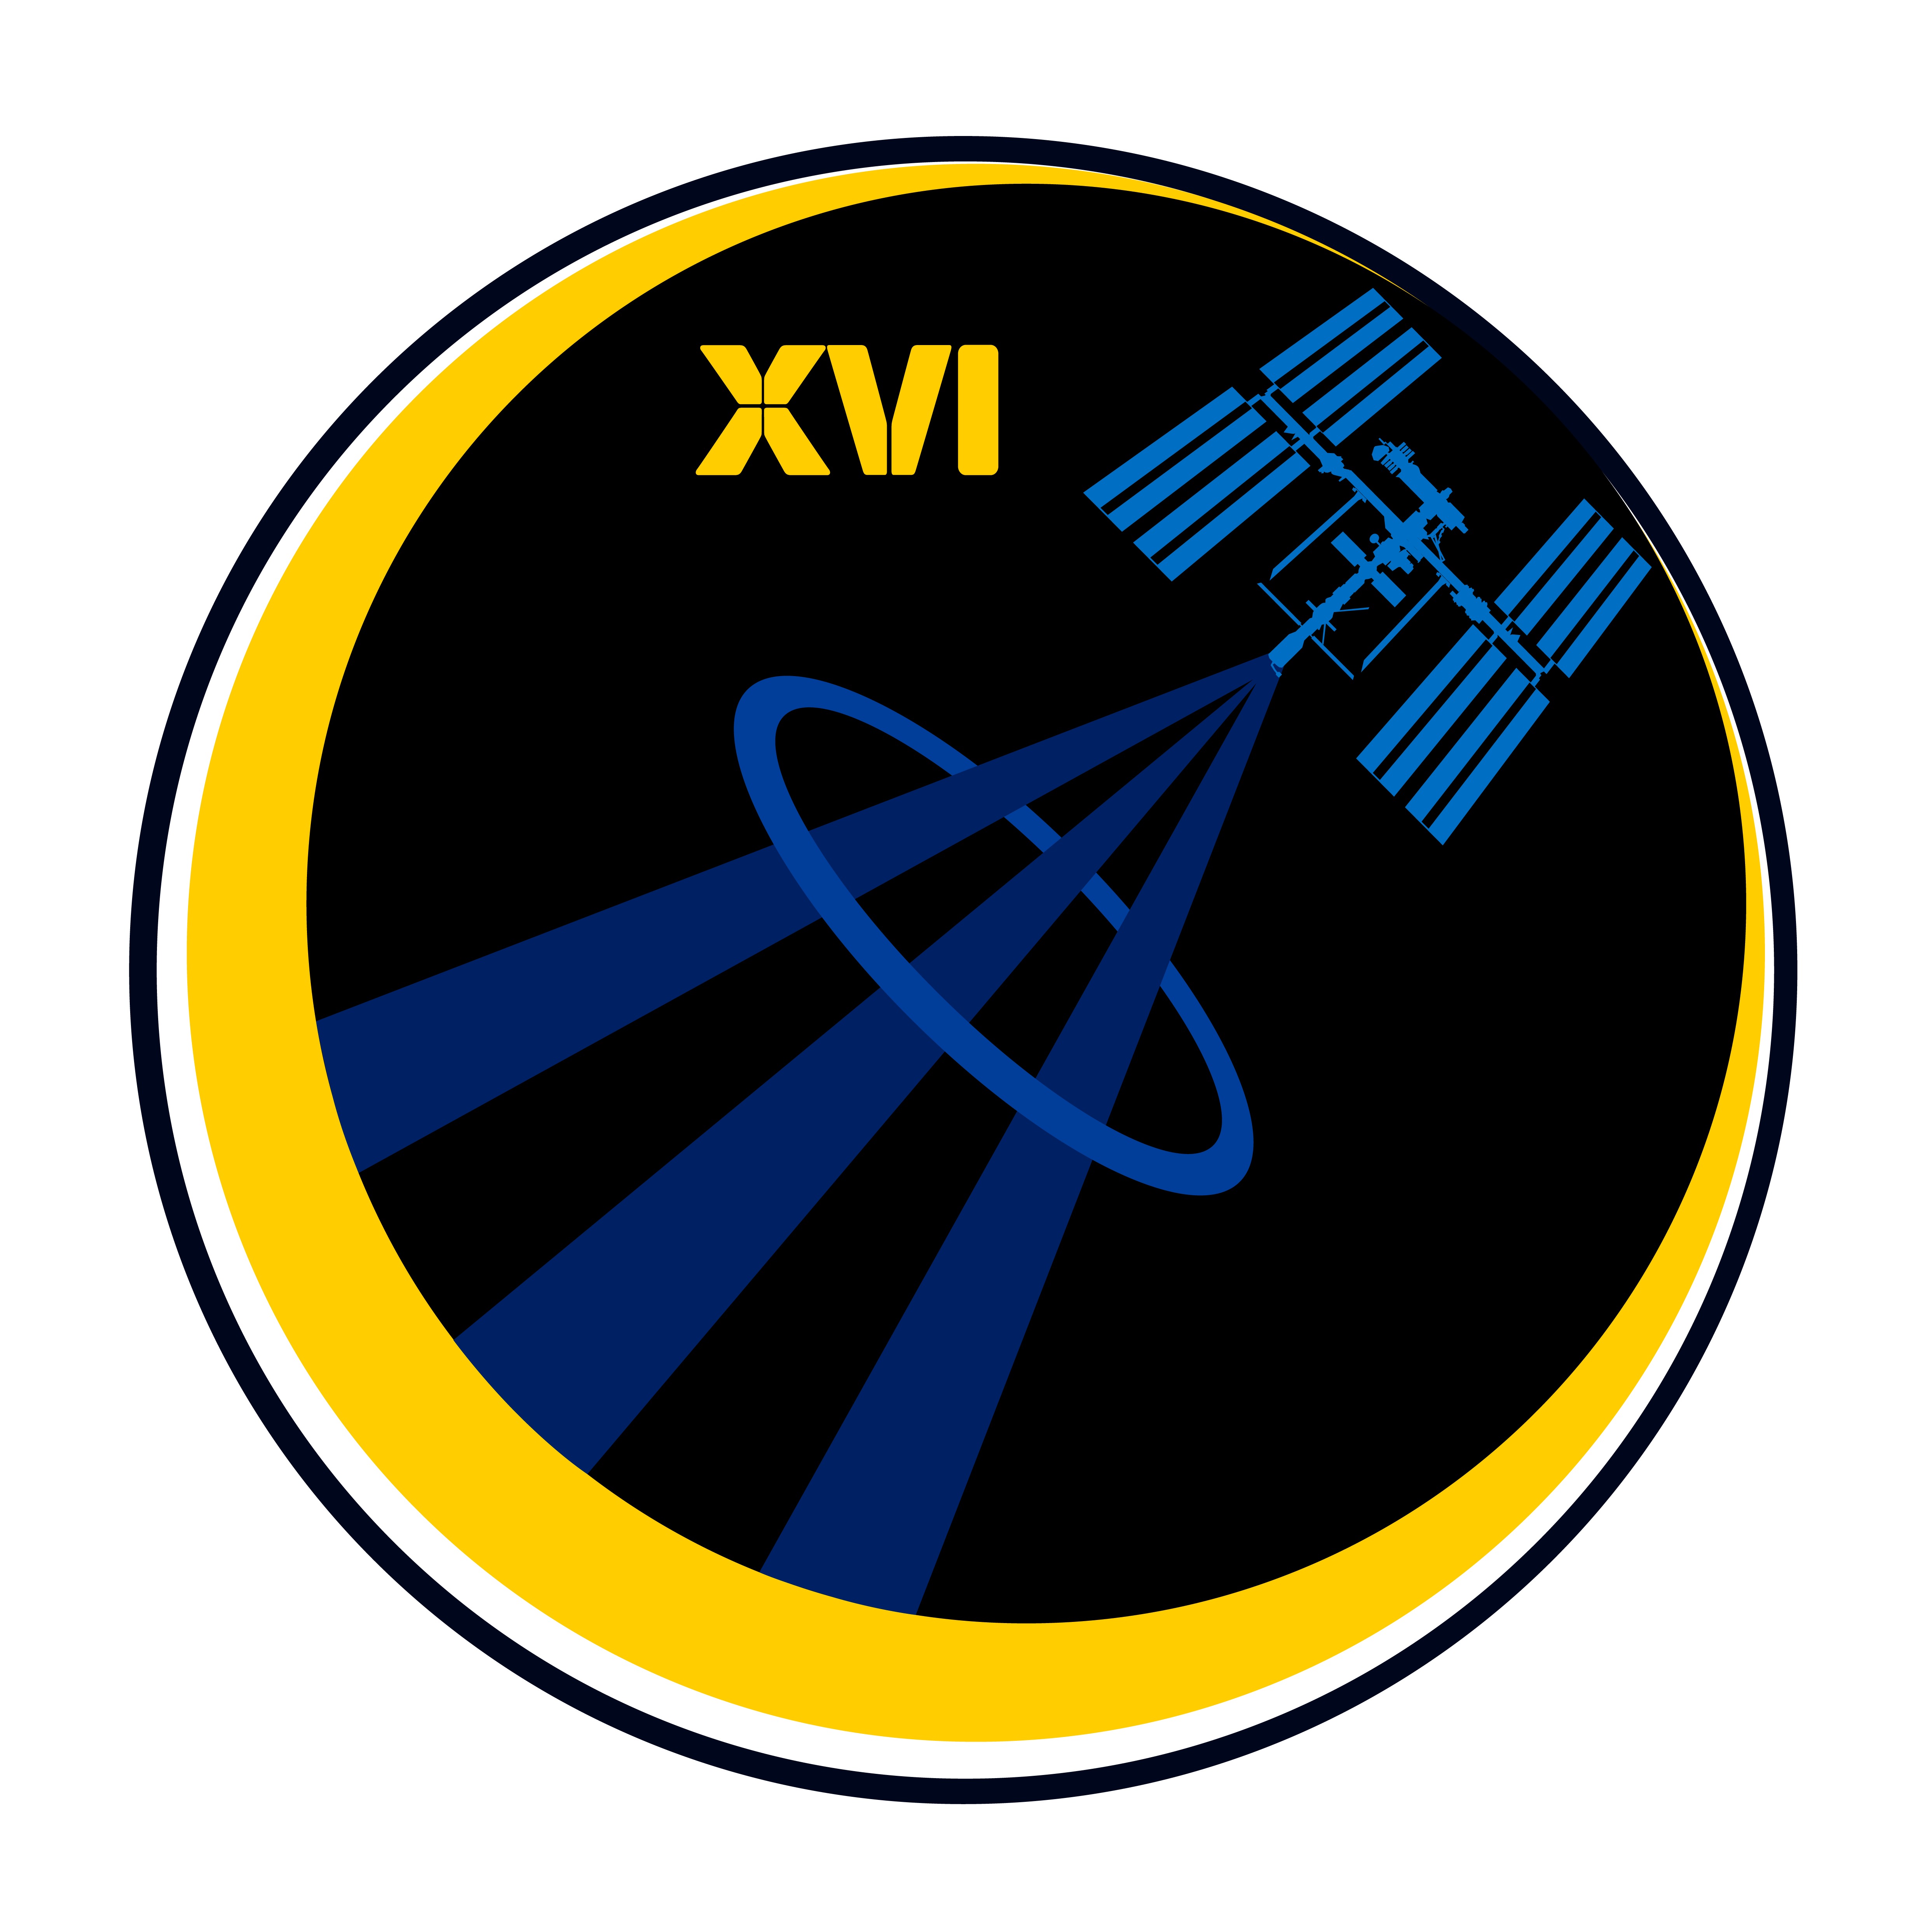 Expedition 16 Crew Insignia